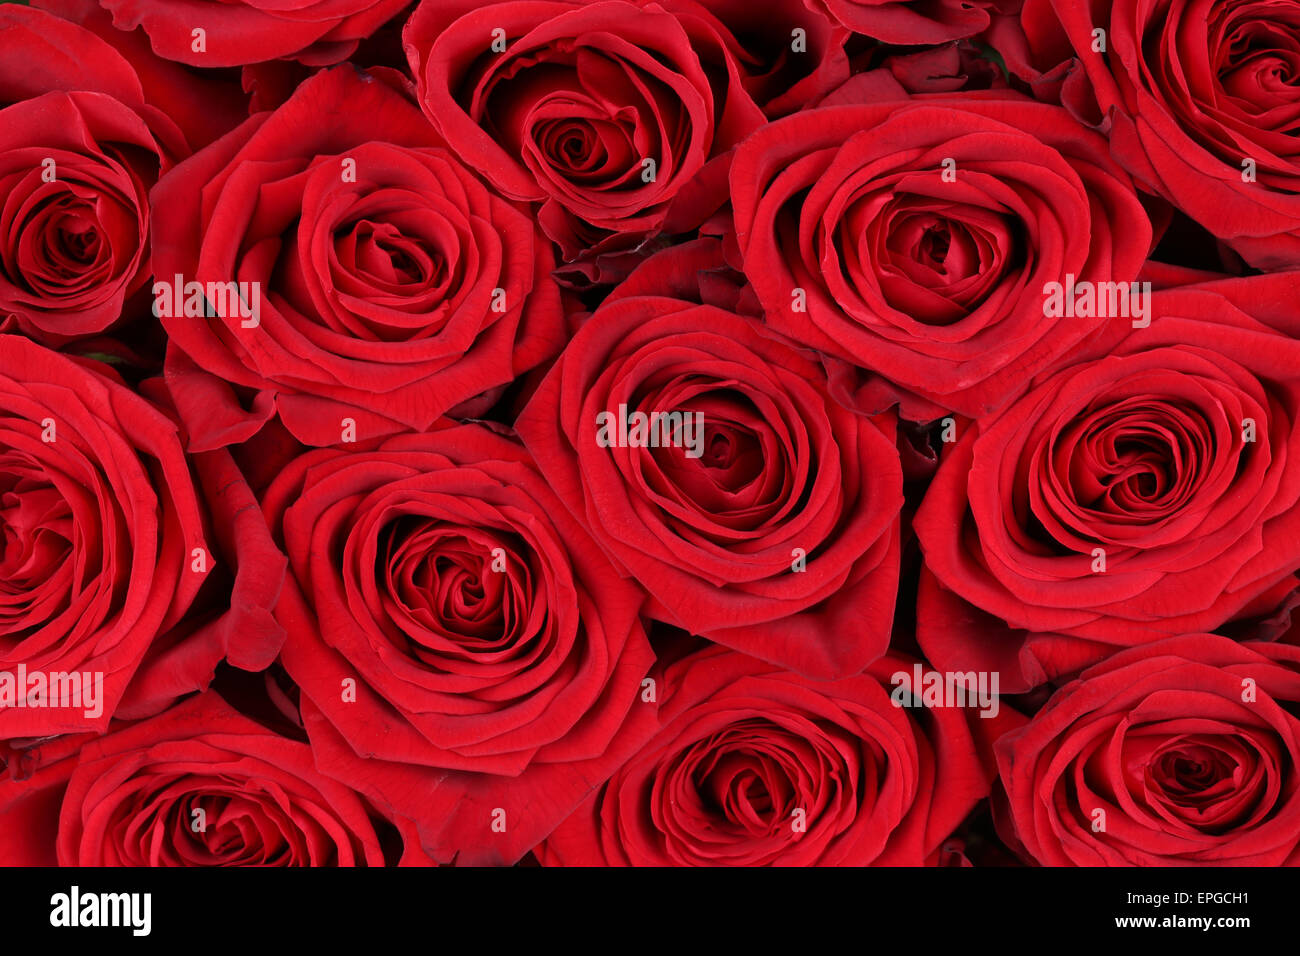 Hintergrund rote Rosen zum Valentinstag oder Muttertag Stock Photo - Alamy